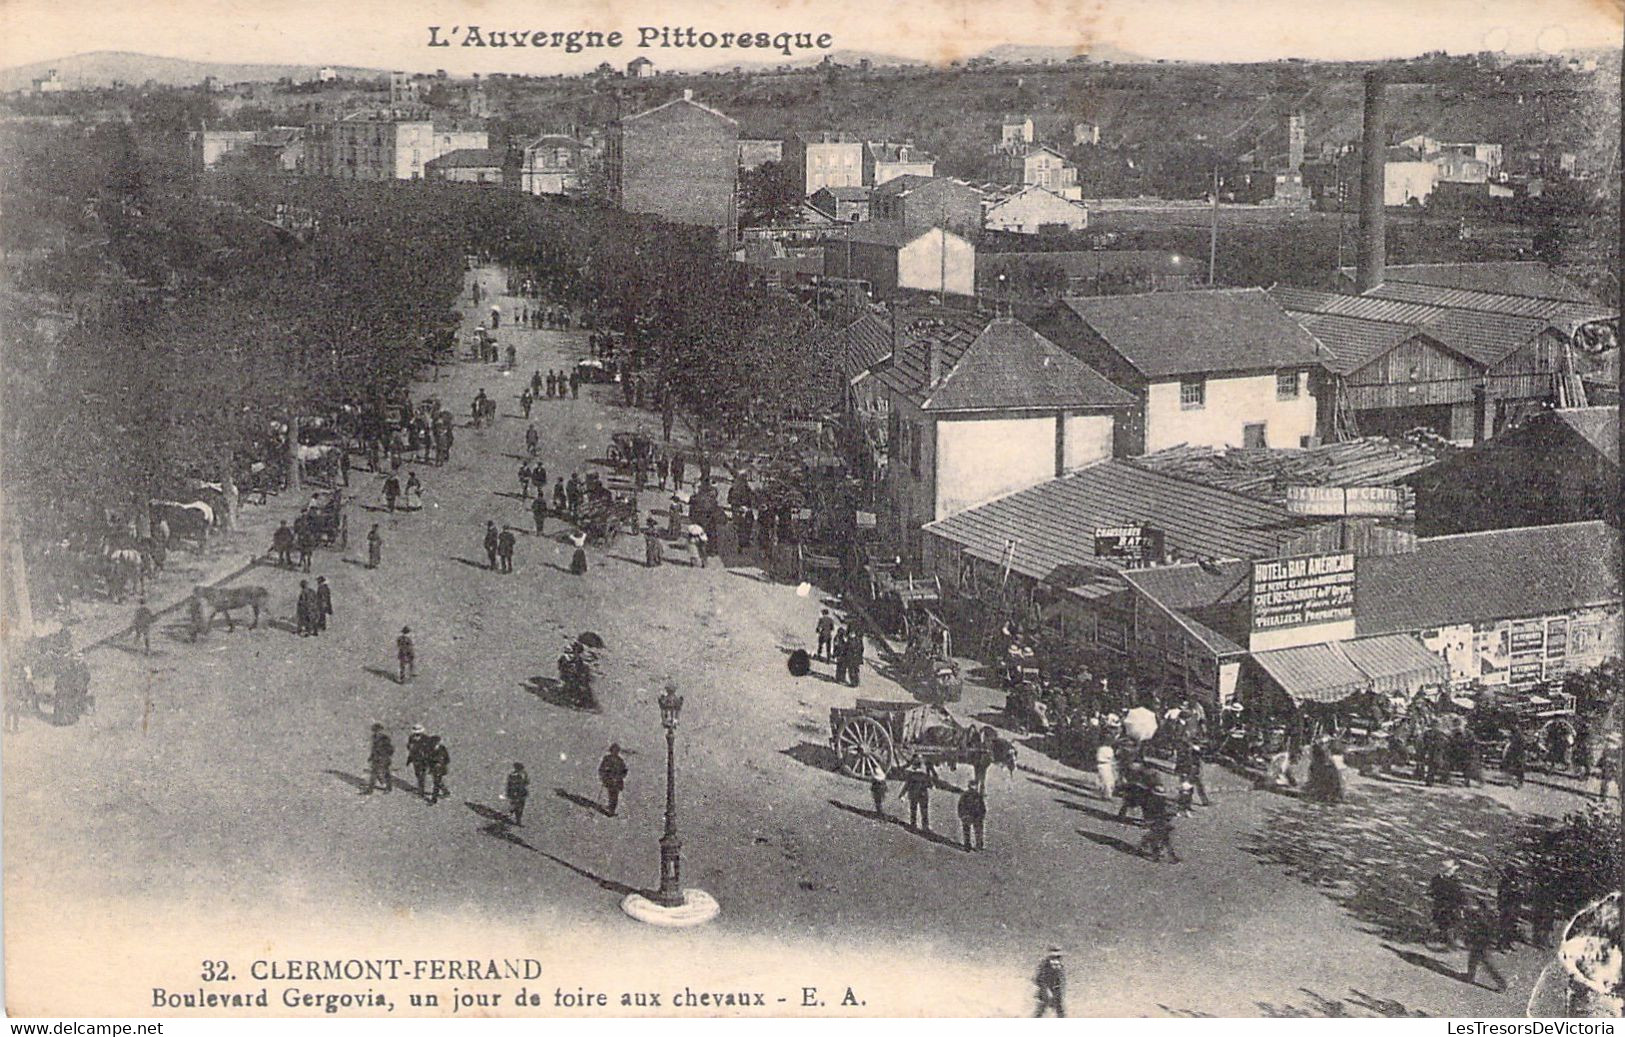 MARCHES - CLERMONT FERRAND - Boulevard Gergovia - Un Jour De Foire Aux Chevaux - Carte Postale Ancienne - Märkte